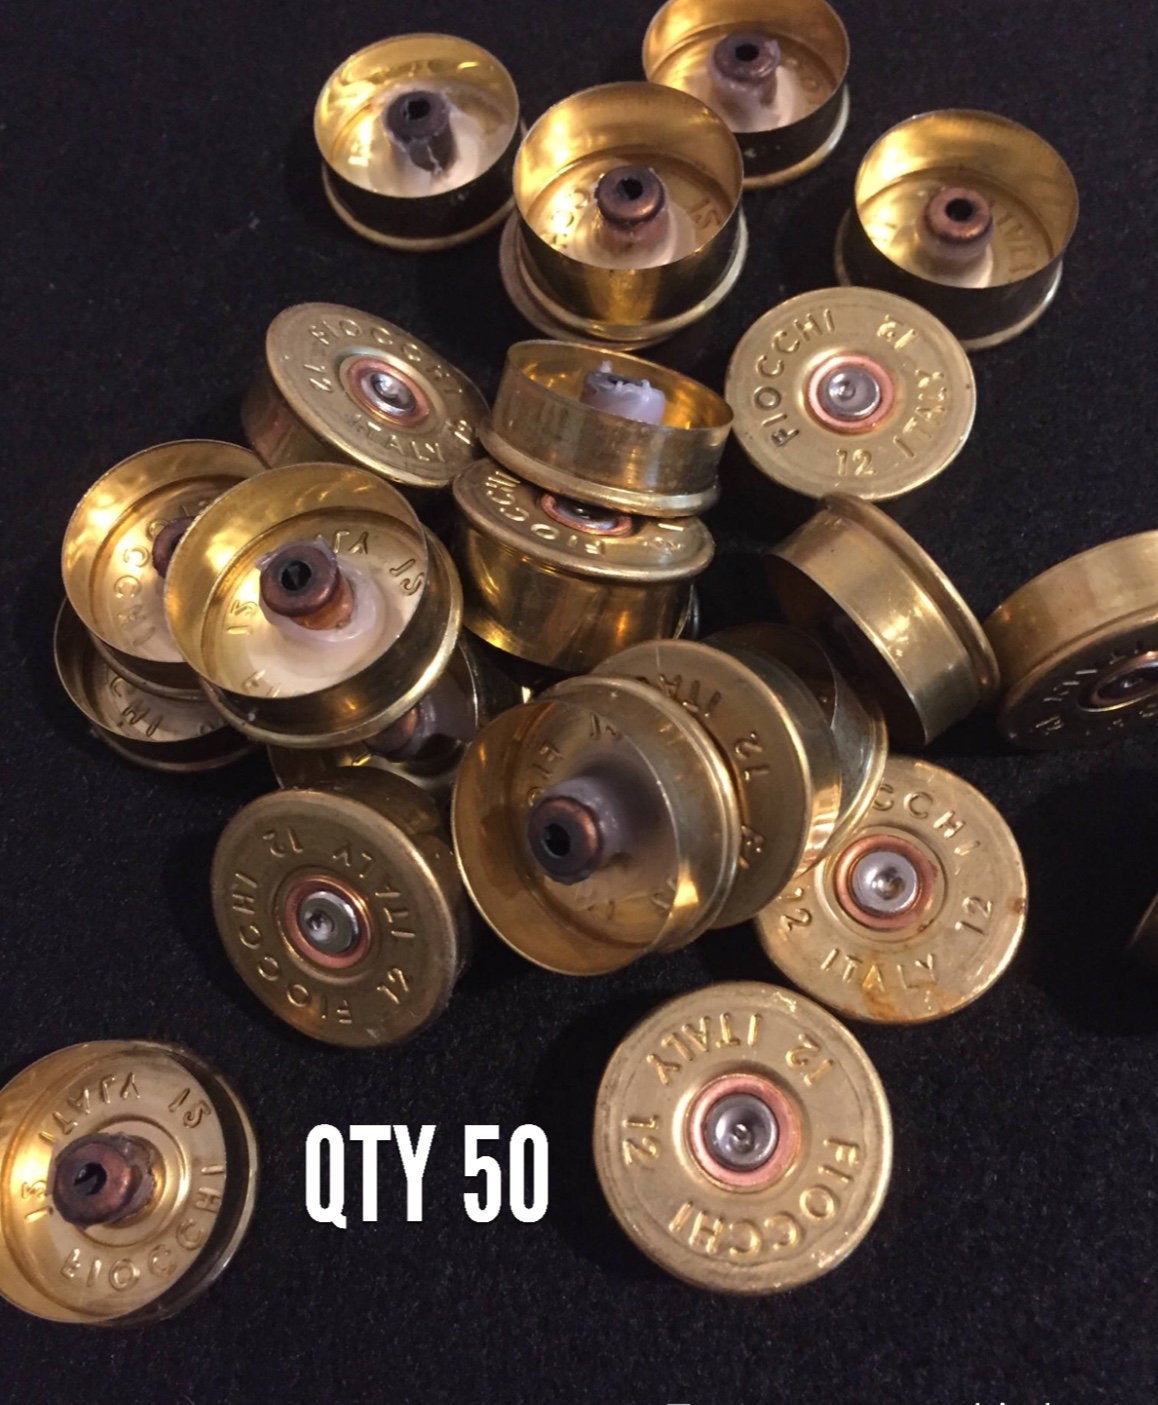 Gold Head Stamps Shotgun Shell 12 Gauge End Caps Brass Bottoms –